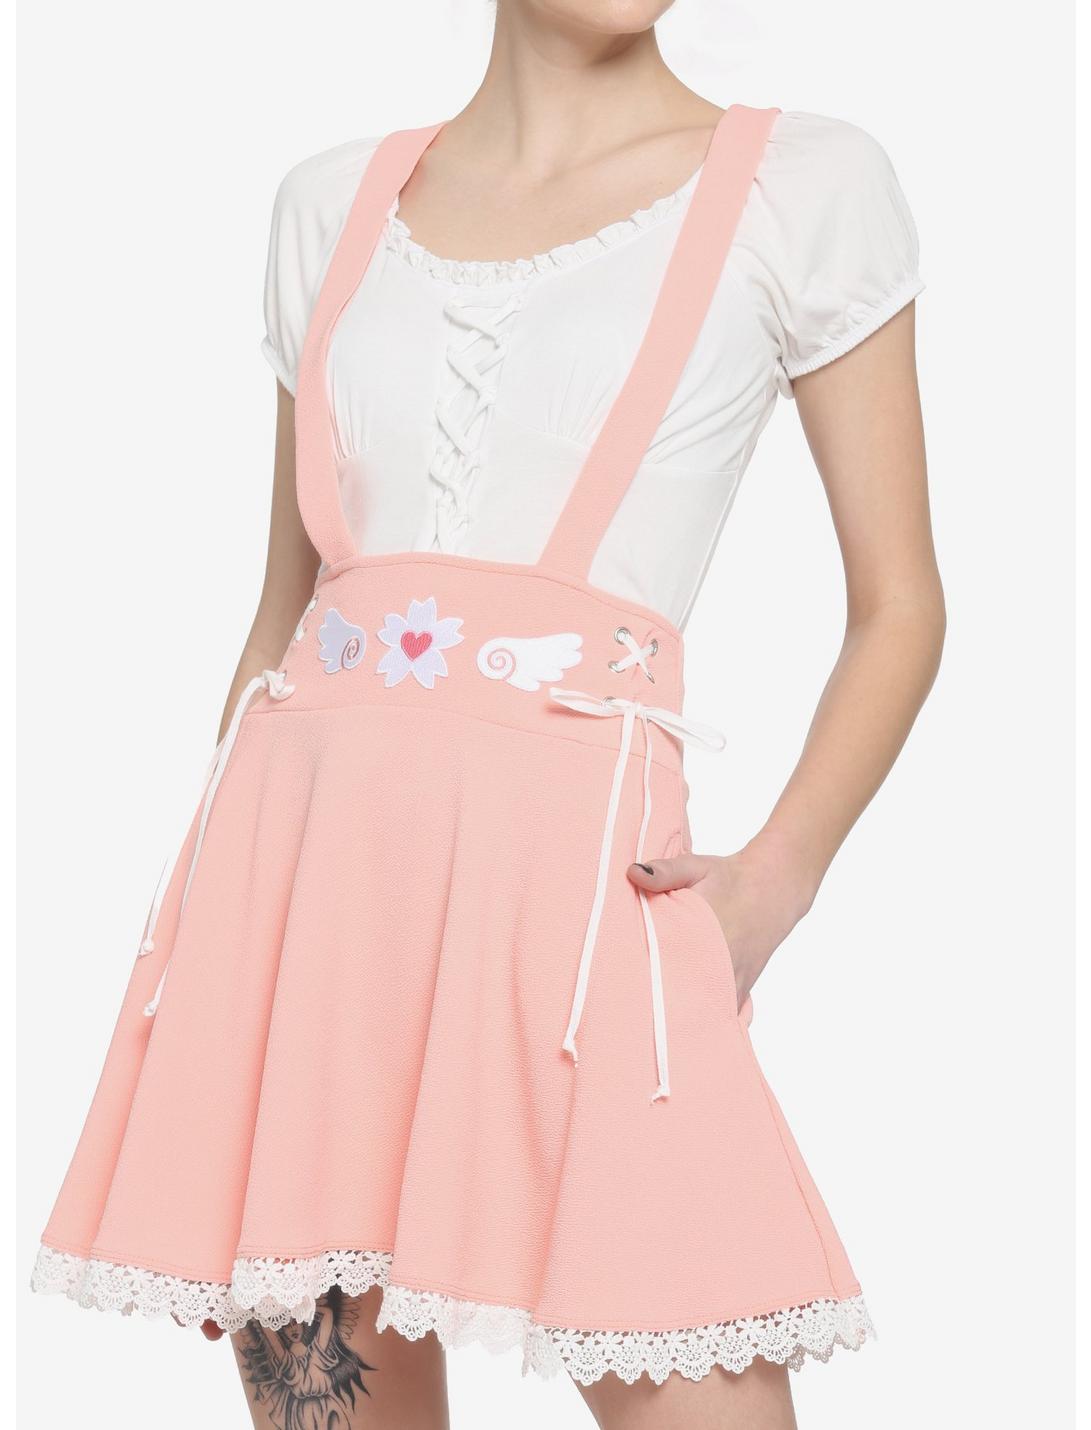 Pink Sakura Lace-Up Suspender Skirt, PINK, hi-res